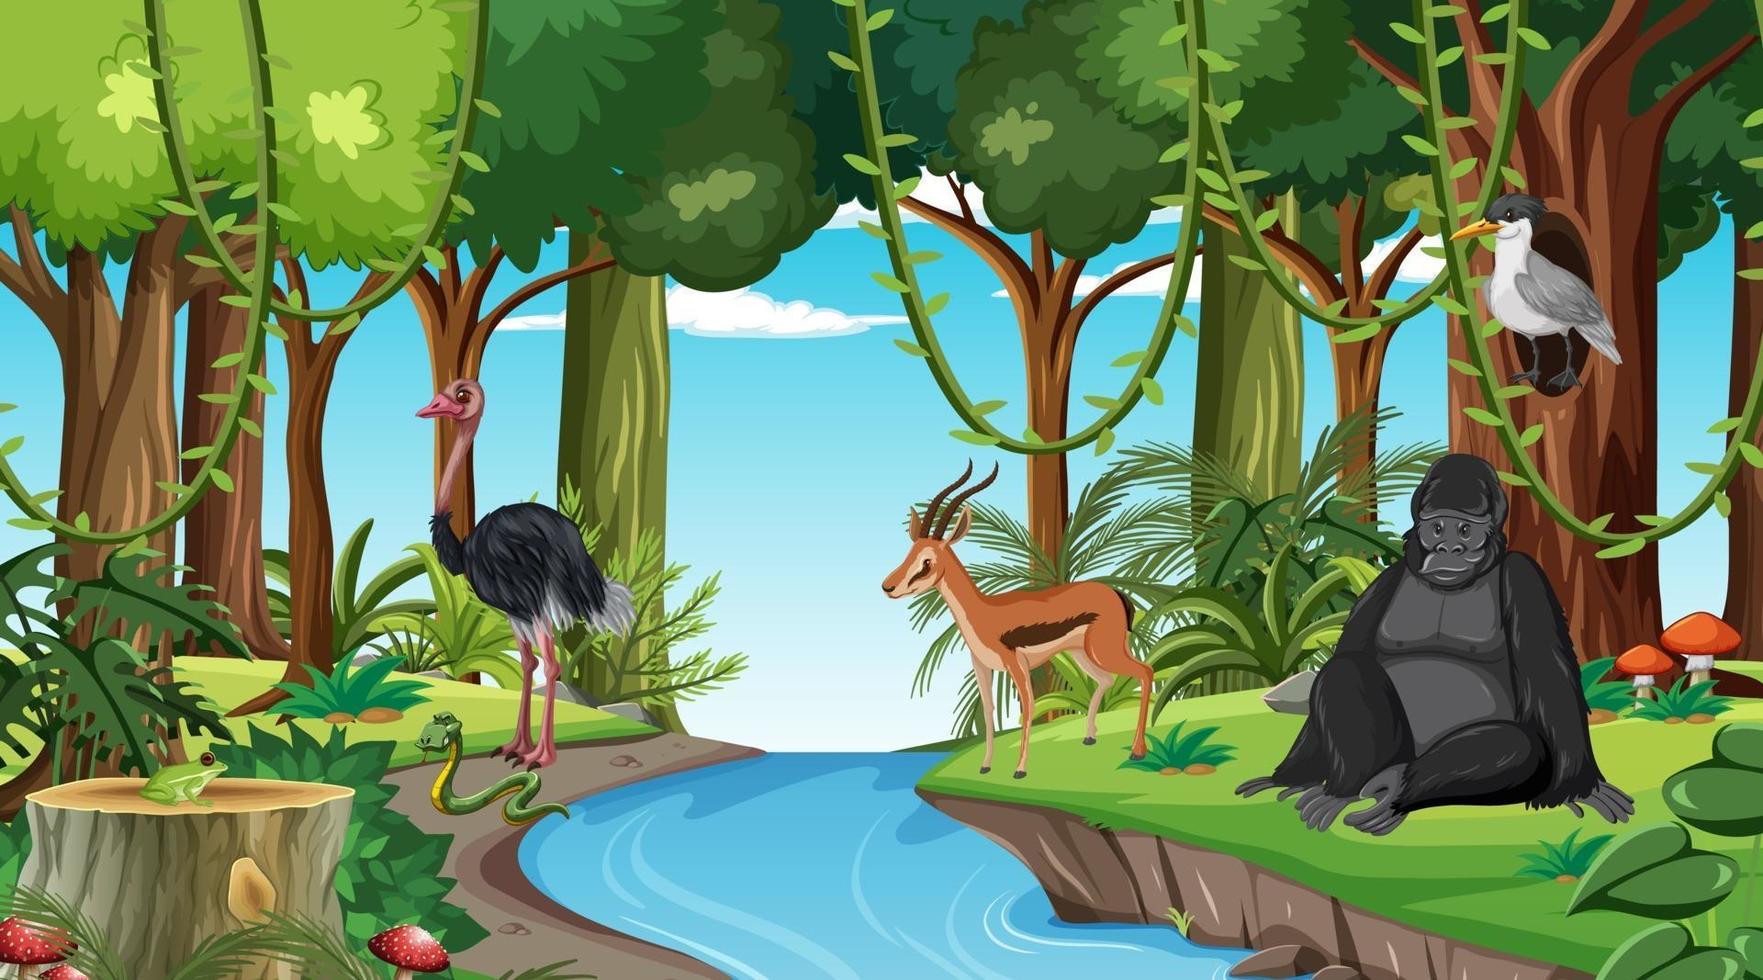 scène de forêt avec différents animaux sauvages vecteur